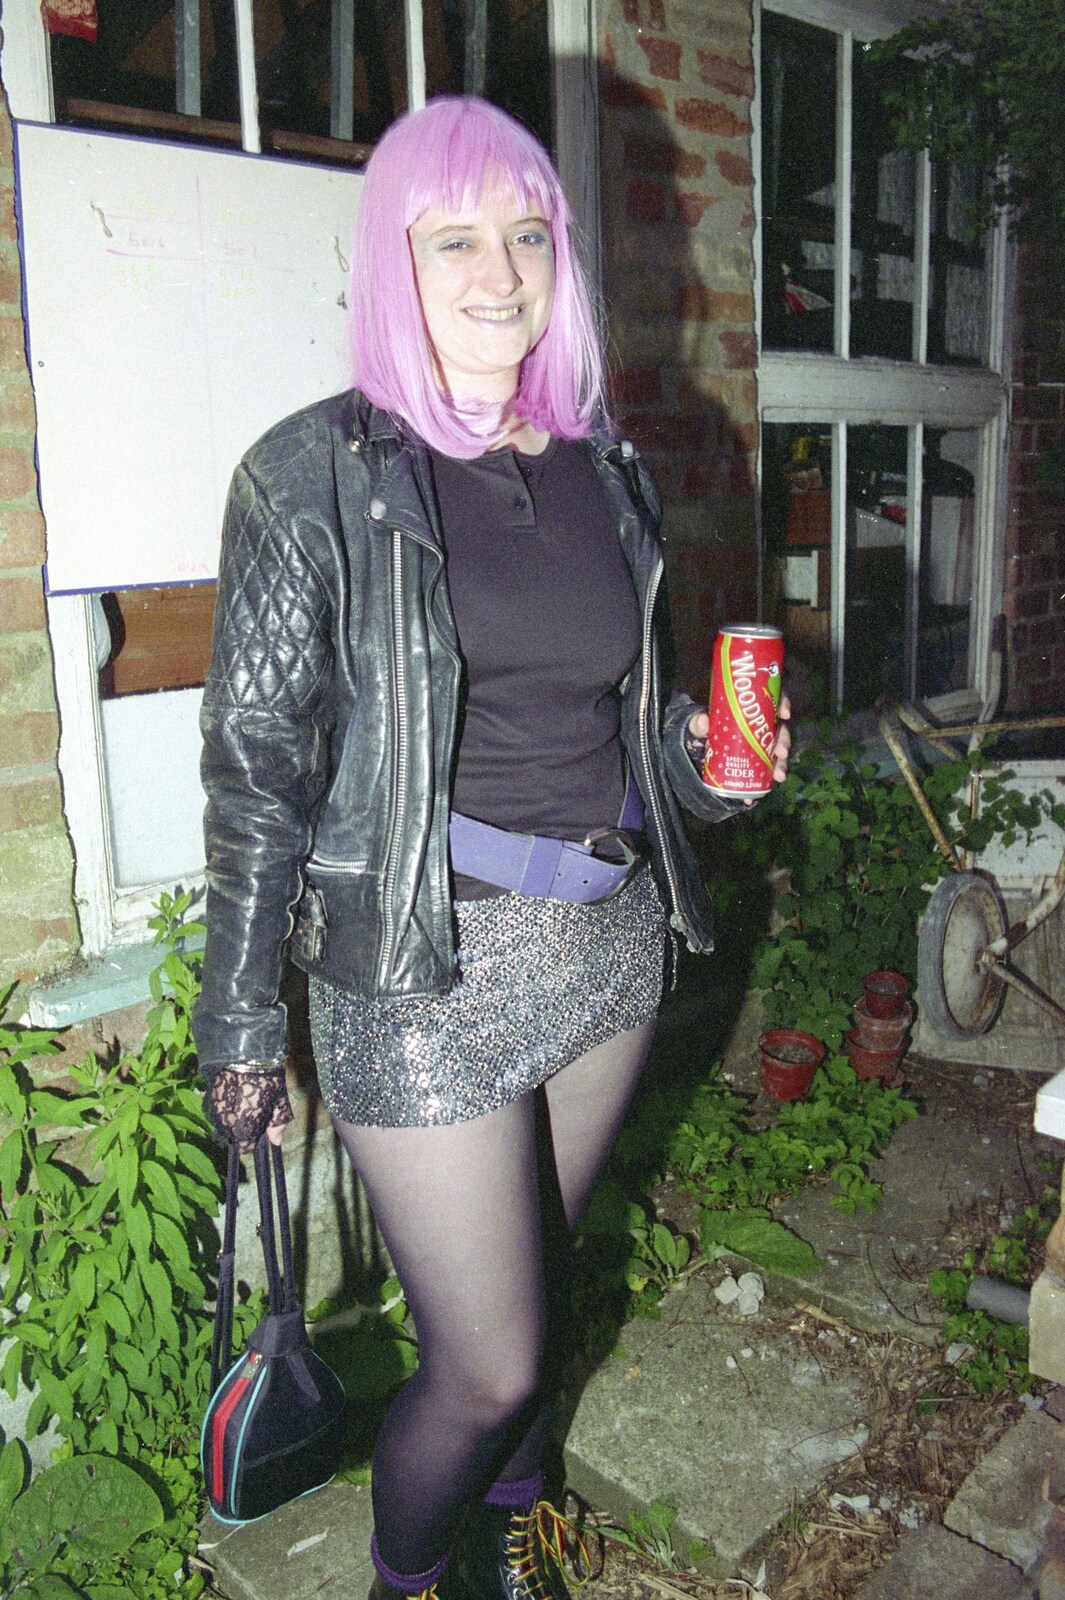 Elen with a can of Woodpecker cider from "Dave's" CISU Fancy Dress Party, Finbar's Walk, Ipswich - 15th September 1999